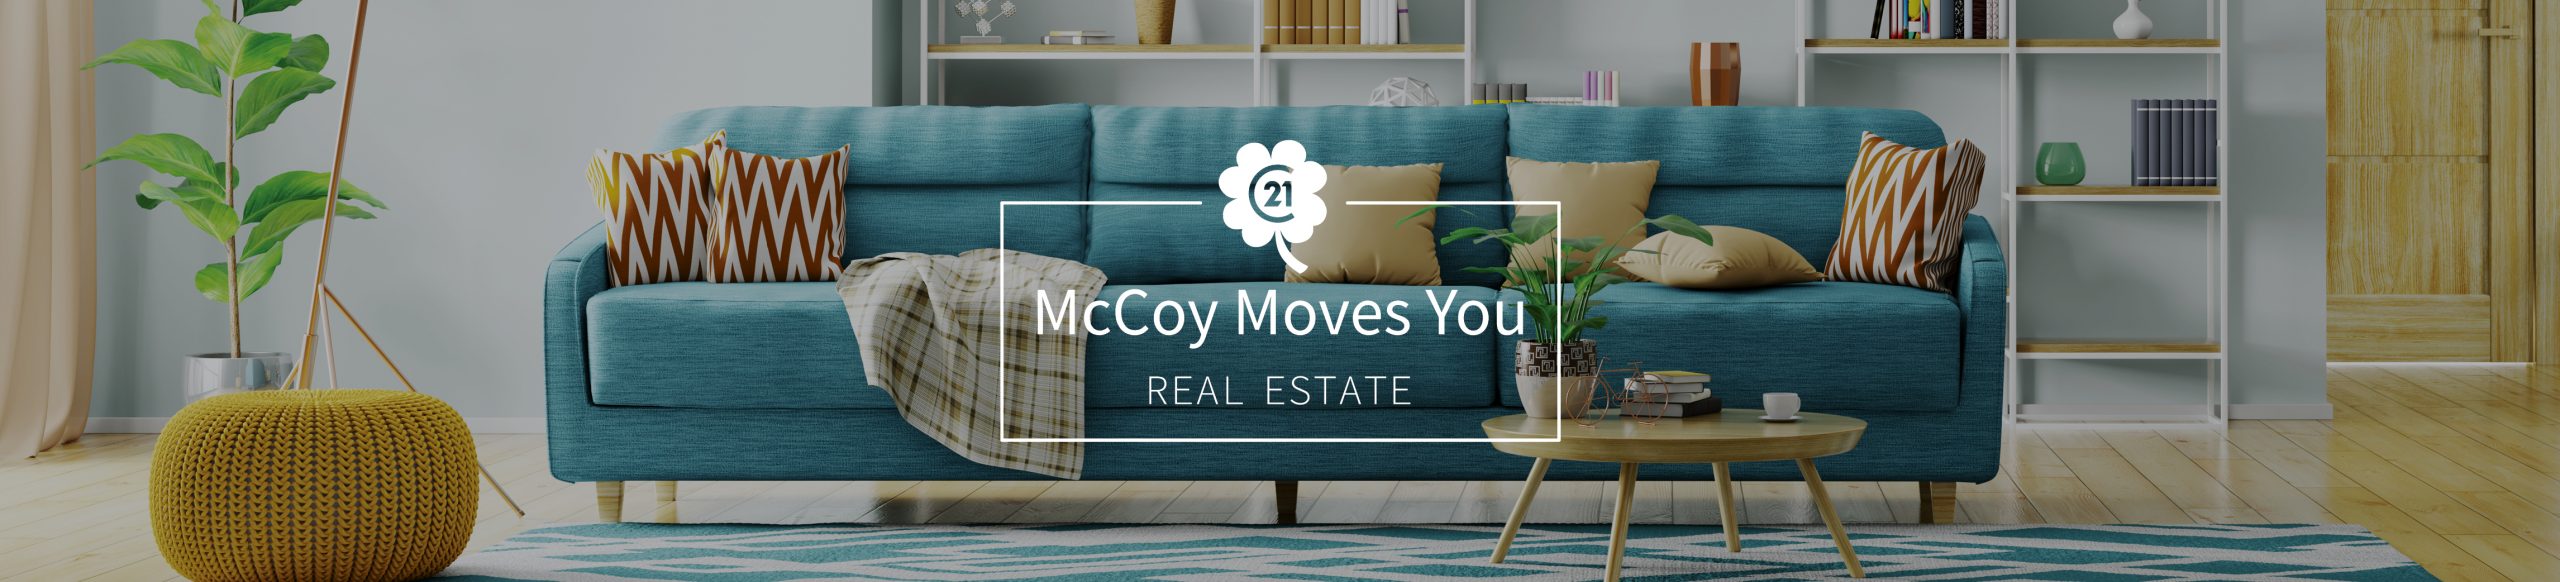 McCoy Moves You Real Estate Header